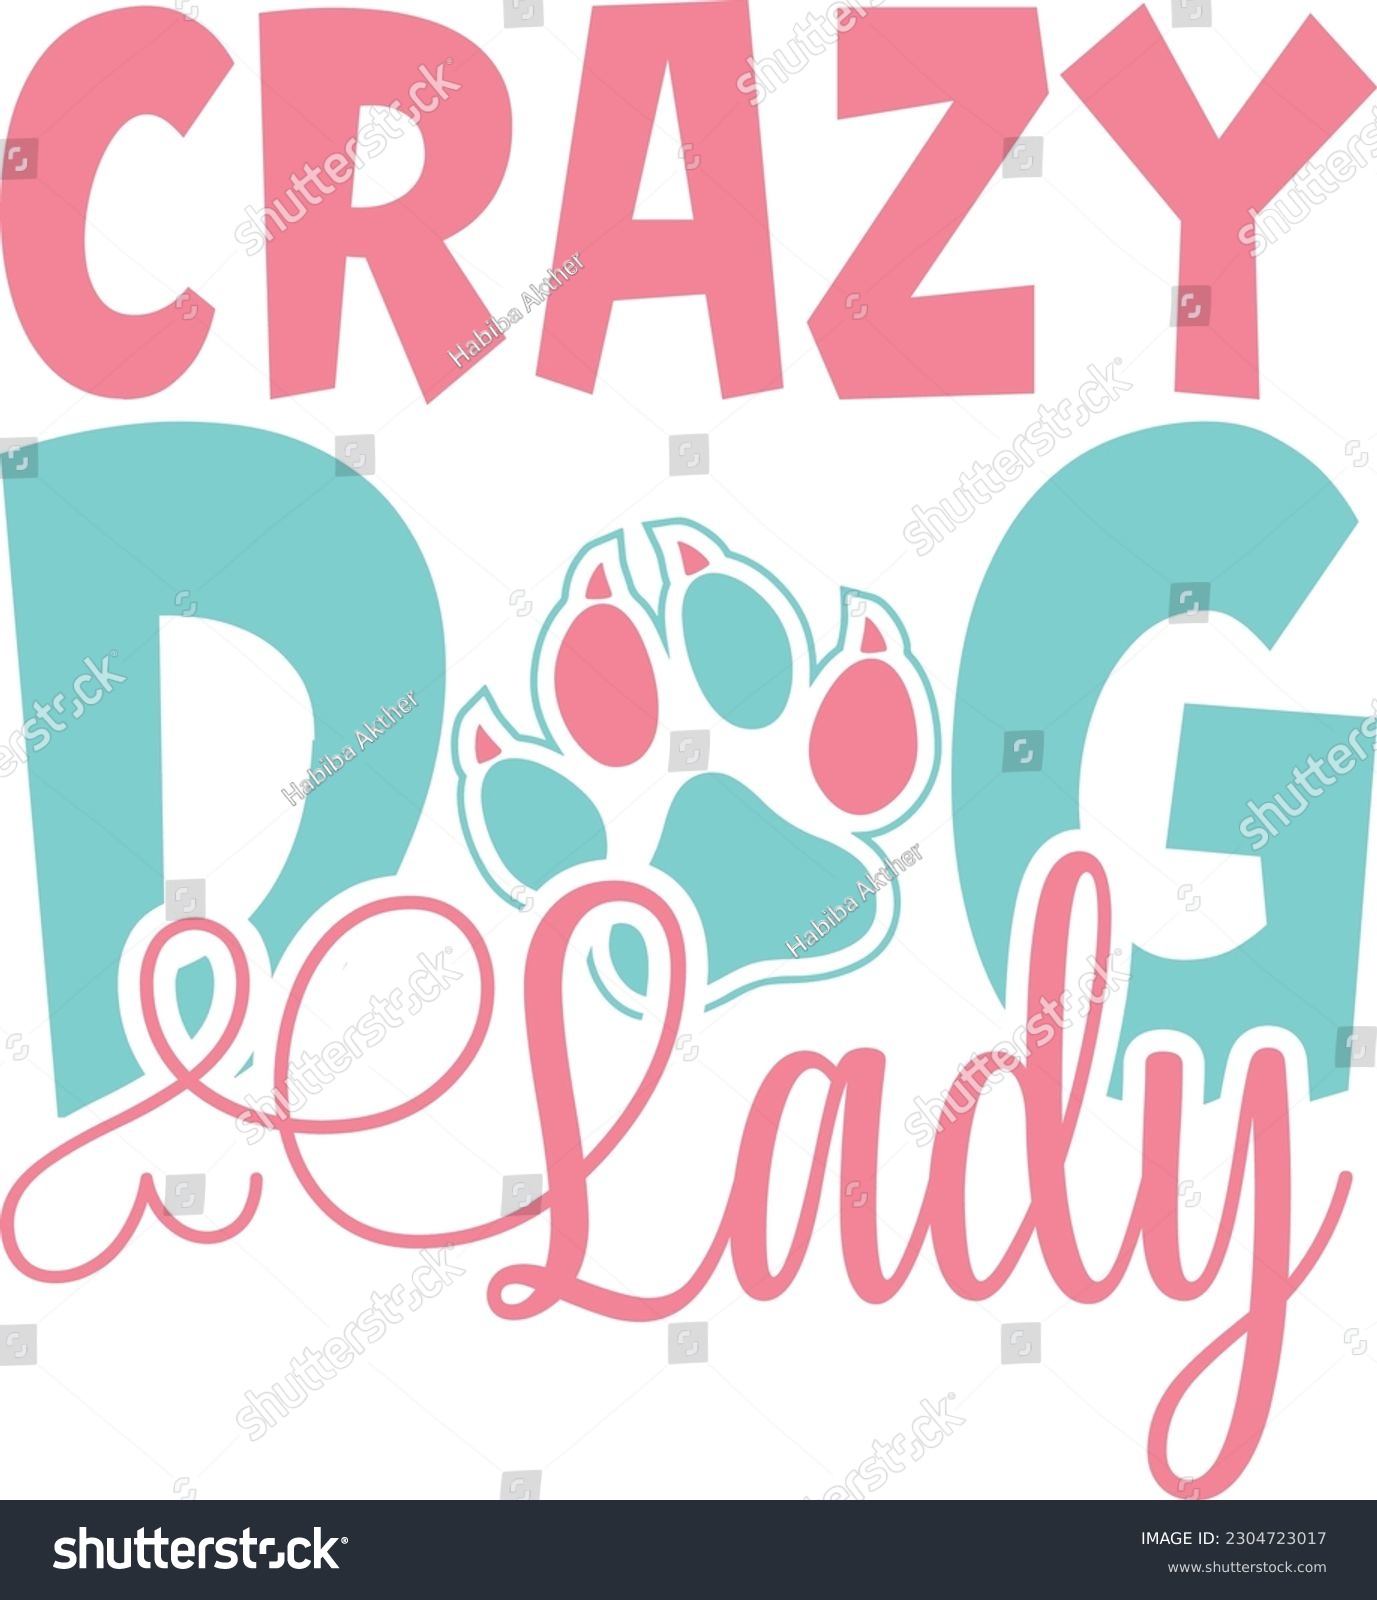 SVG of Crazy dog Lady,Puppy Love,Dog Mom Svg,Dog SVG,Silhouette,Dog Owner Svg, Funny Svg, Fur Mom Shirt Svg,Wine,Dog Mama,Dog Heart,Dog Paw,Eps,Labrador Svg,Pet Svg,Vector, svg